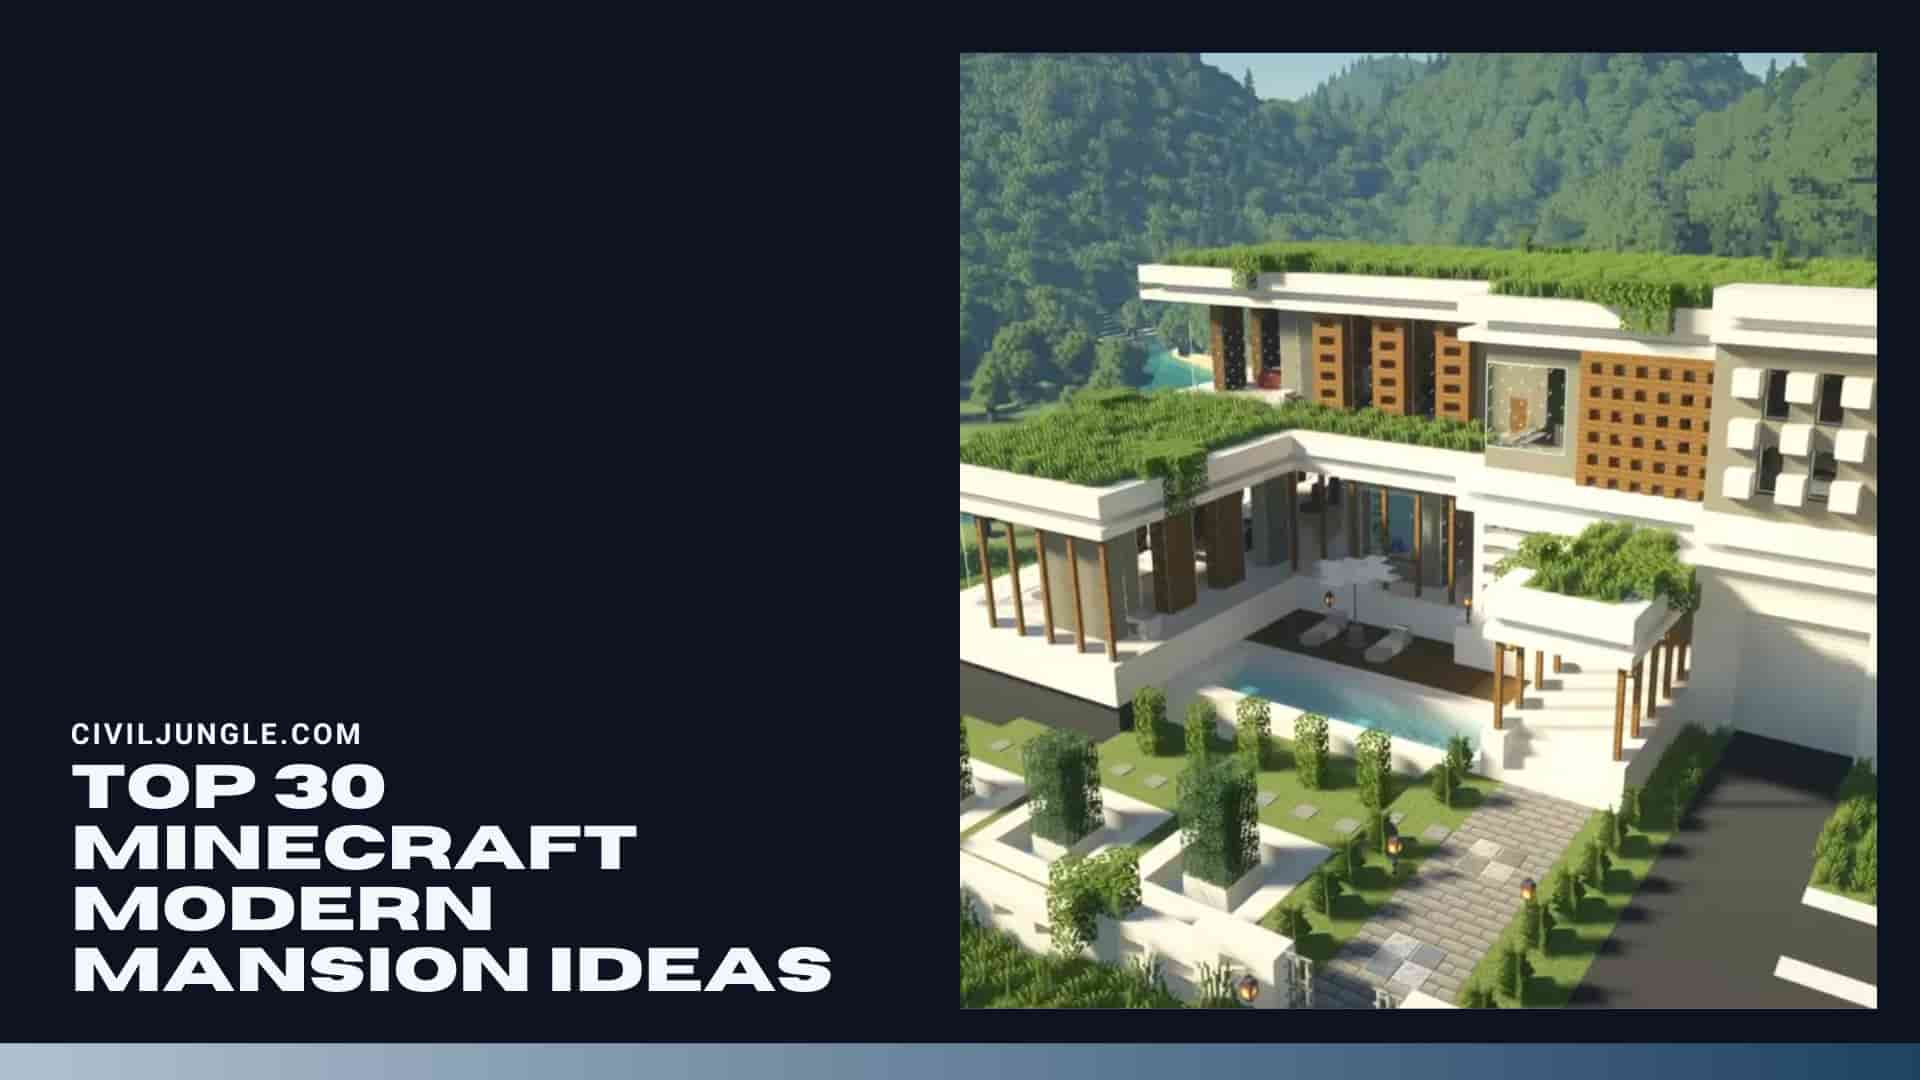 Top 30 Minecraft Modern Mansion Ideas